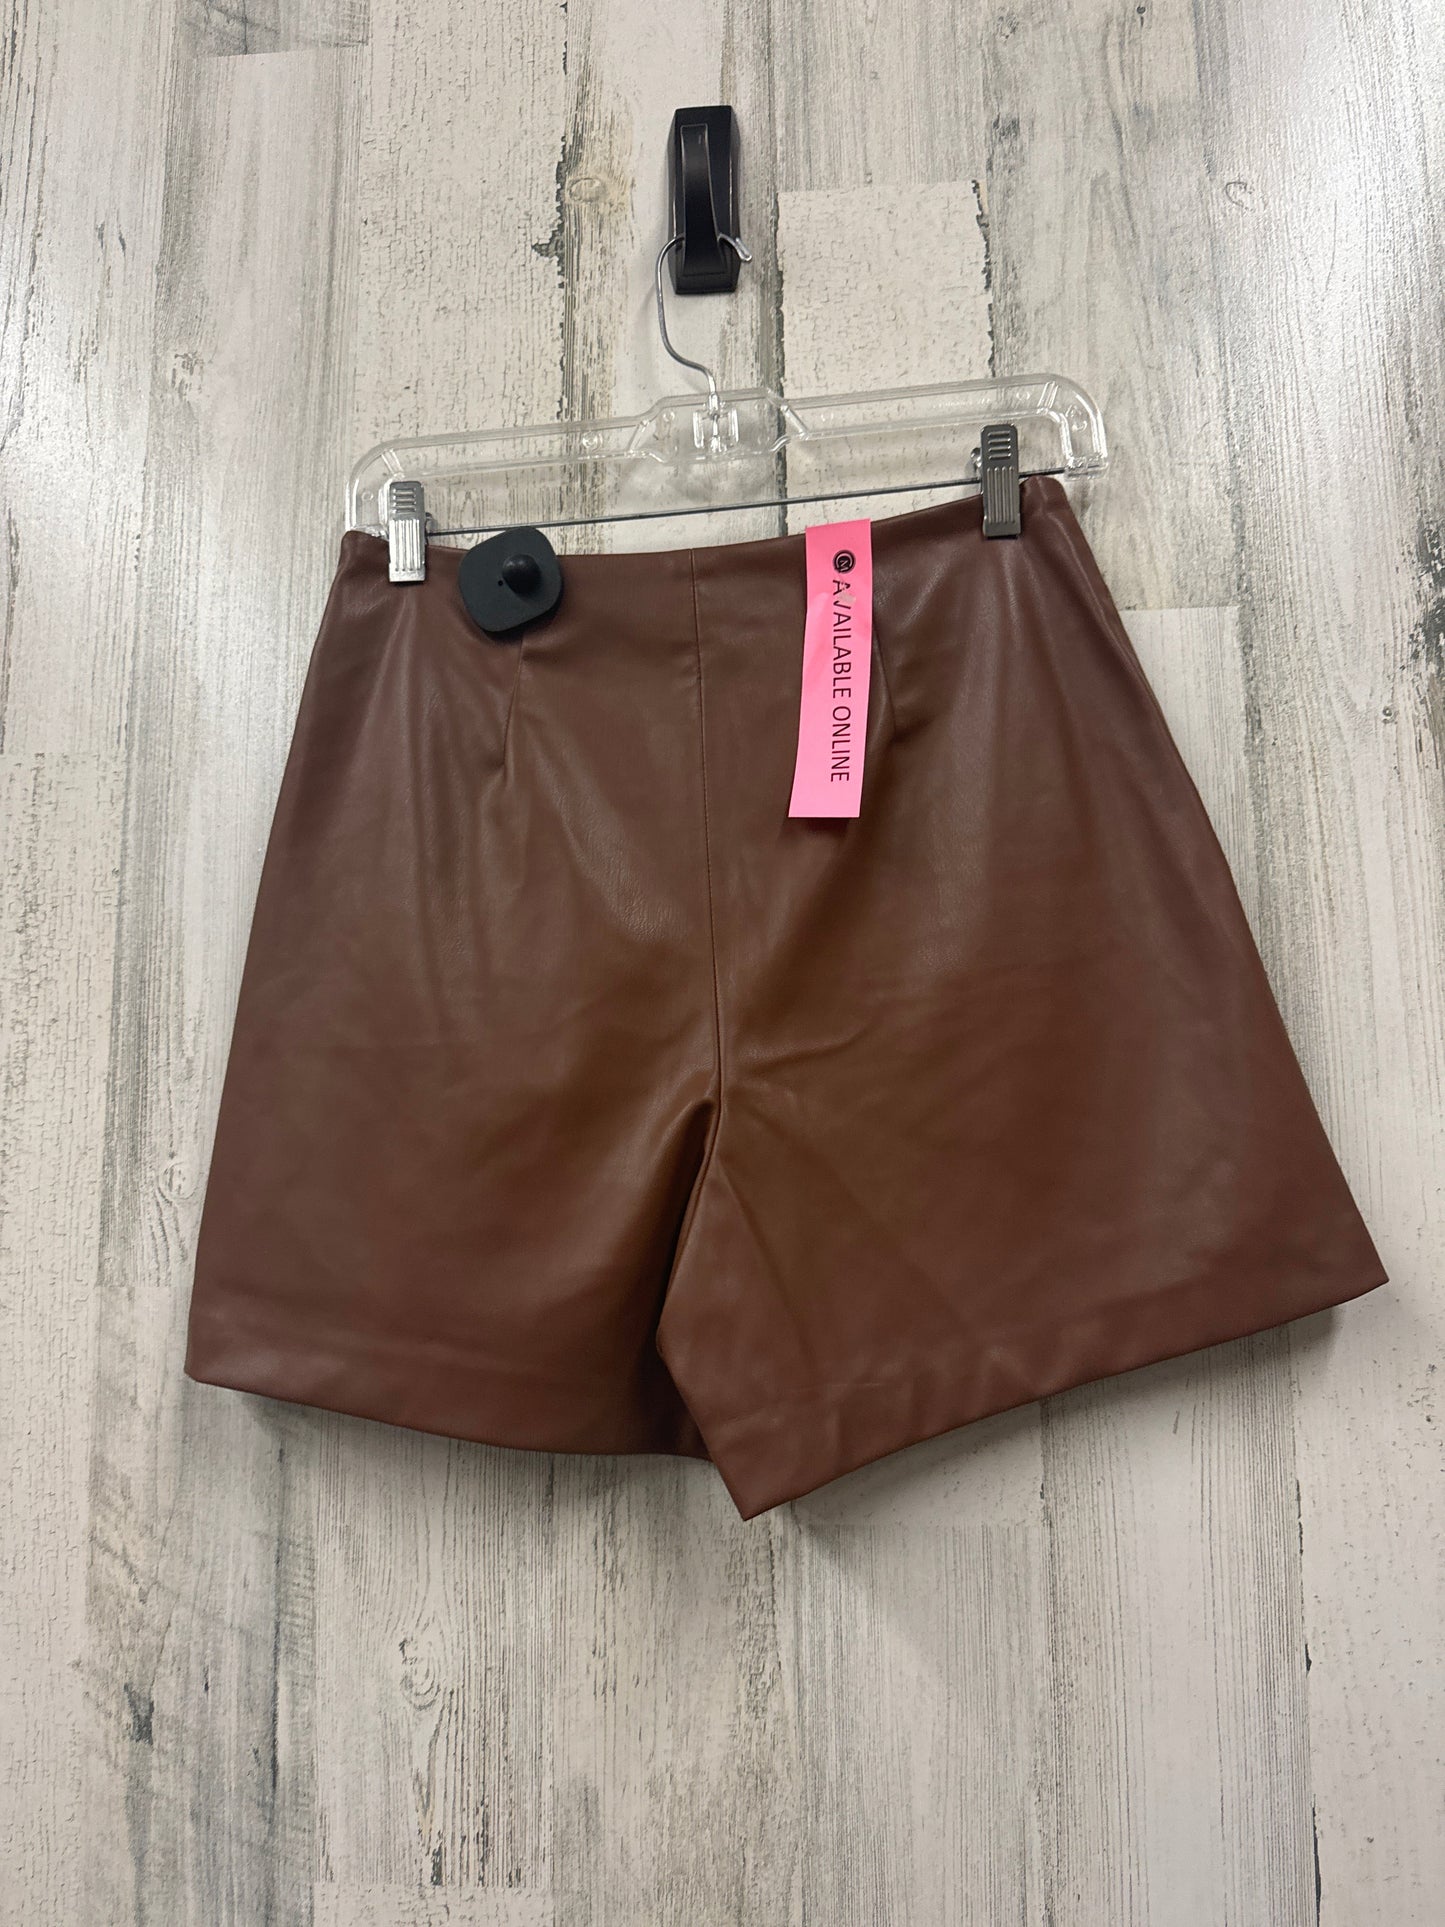 Brown Shorts Zara, Size S